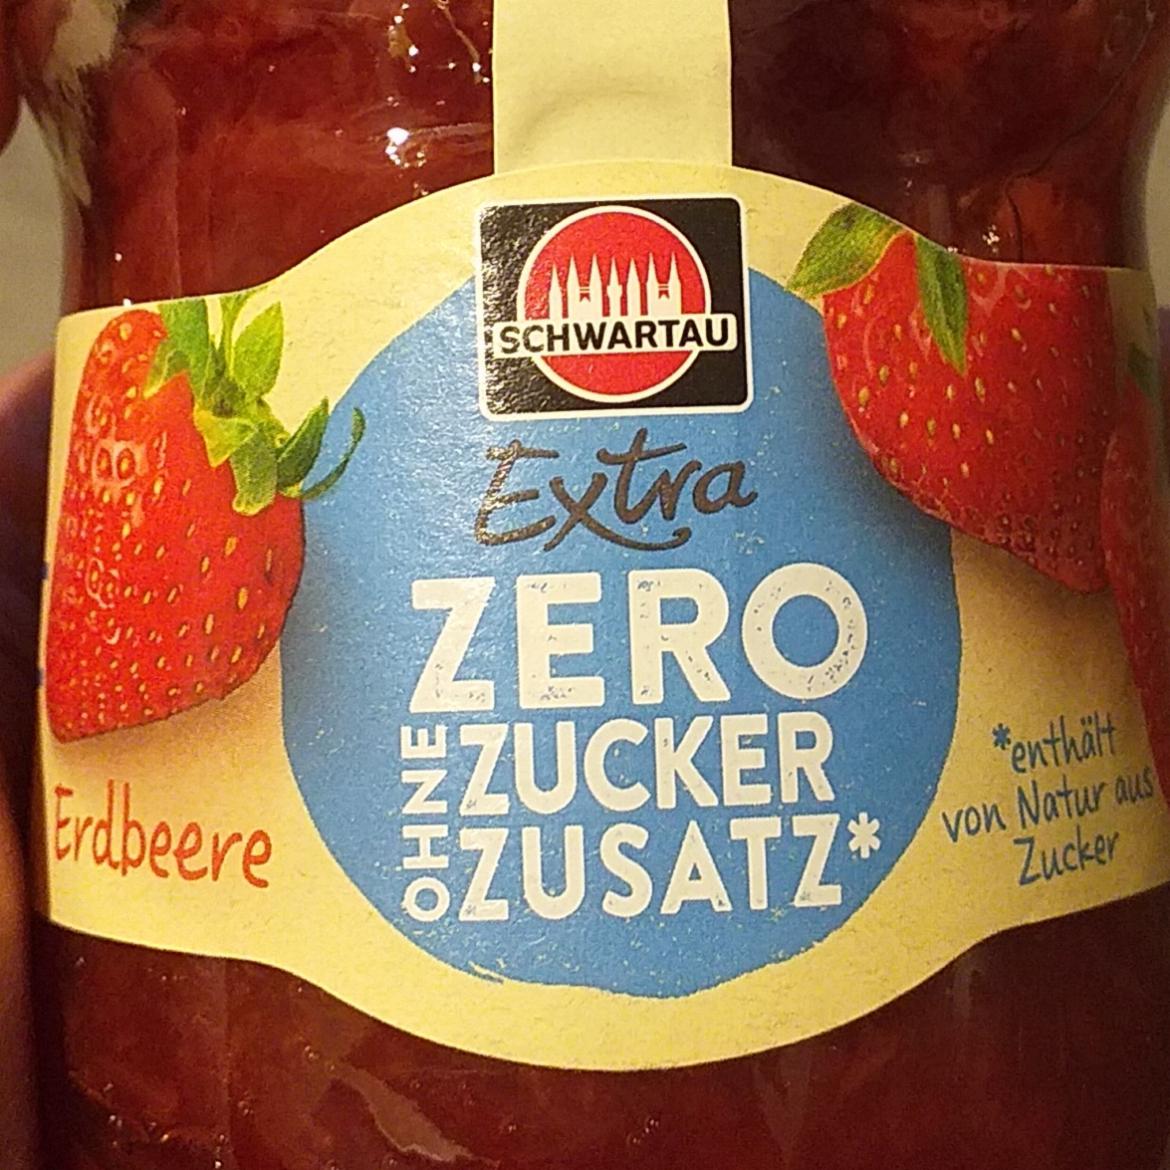 Zdjęcia - Extra zero ohne zucker zusatz Erdbeere Schwartau